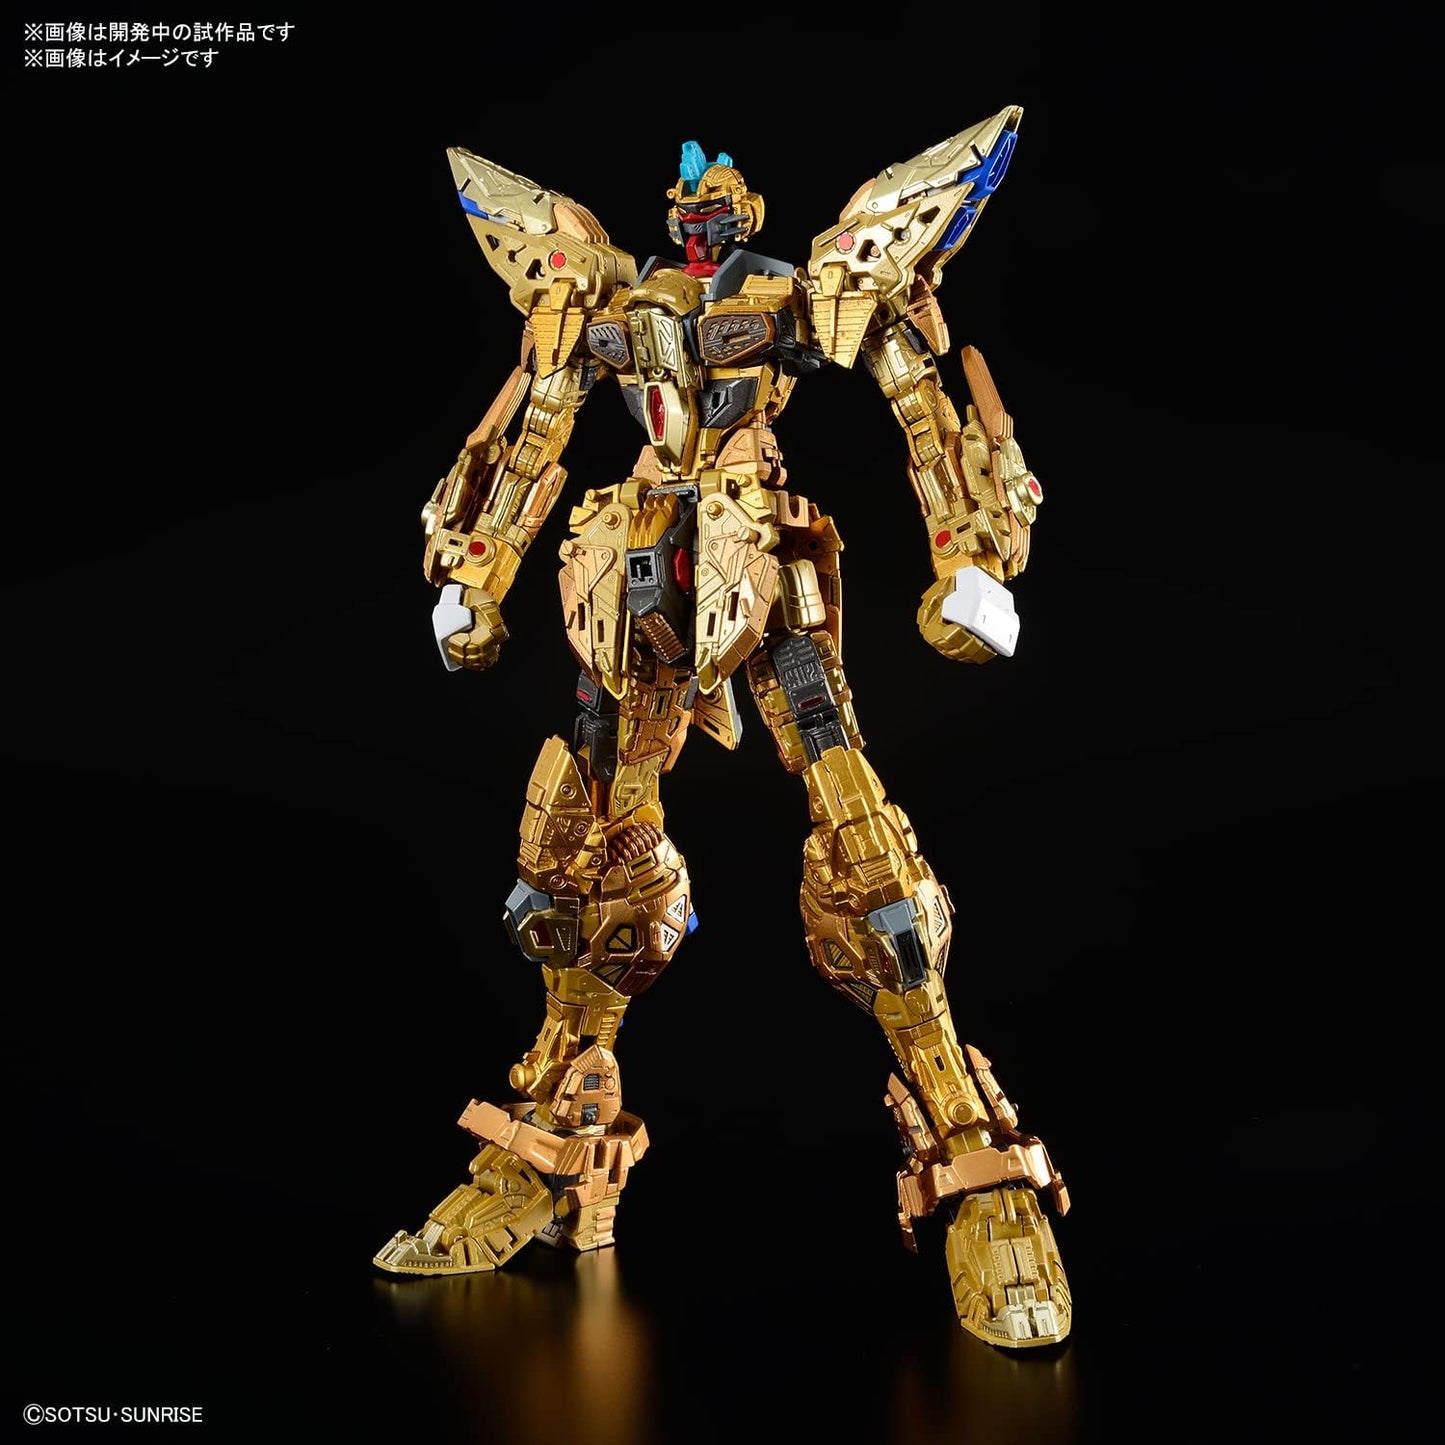 MGEX ZGMF - X20A Strike Freedom Gundam - TongDa